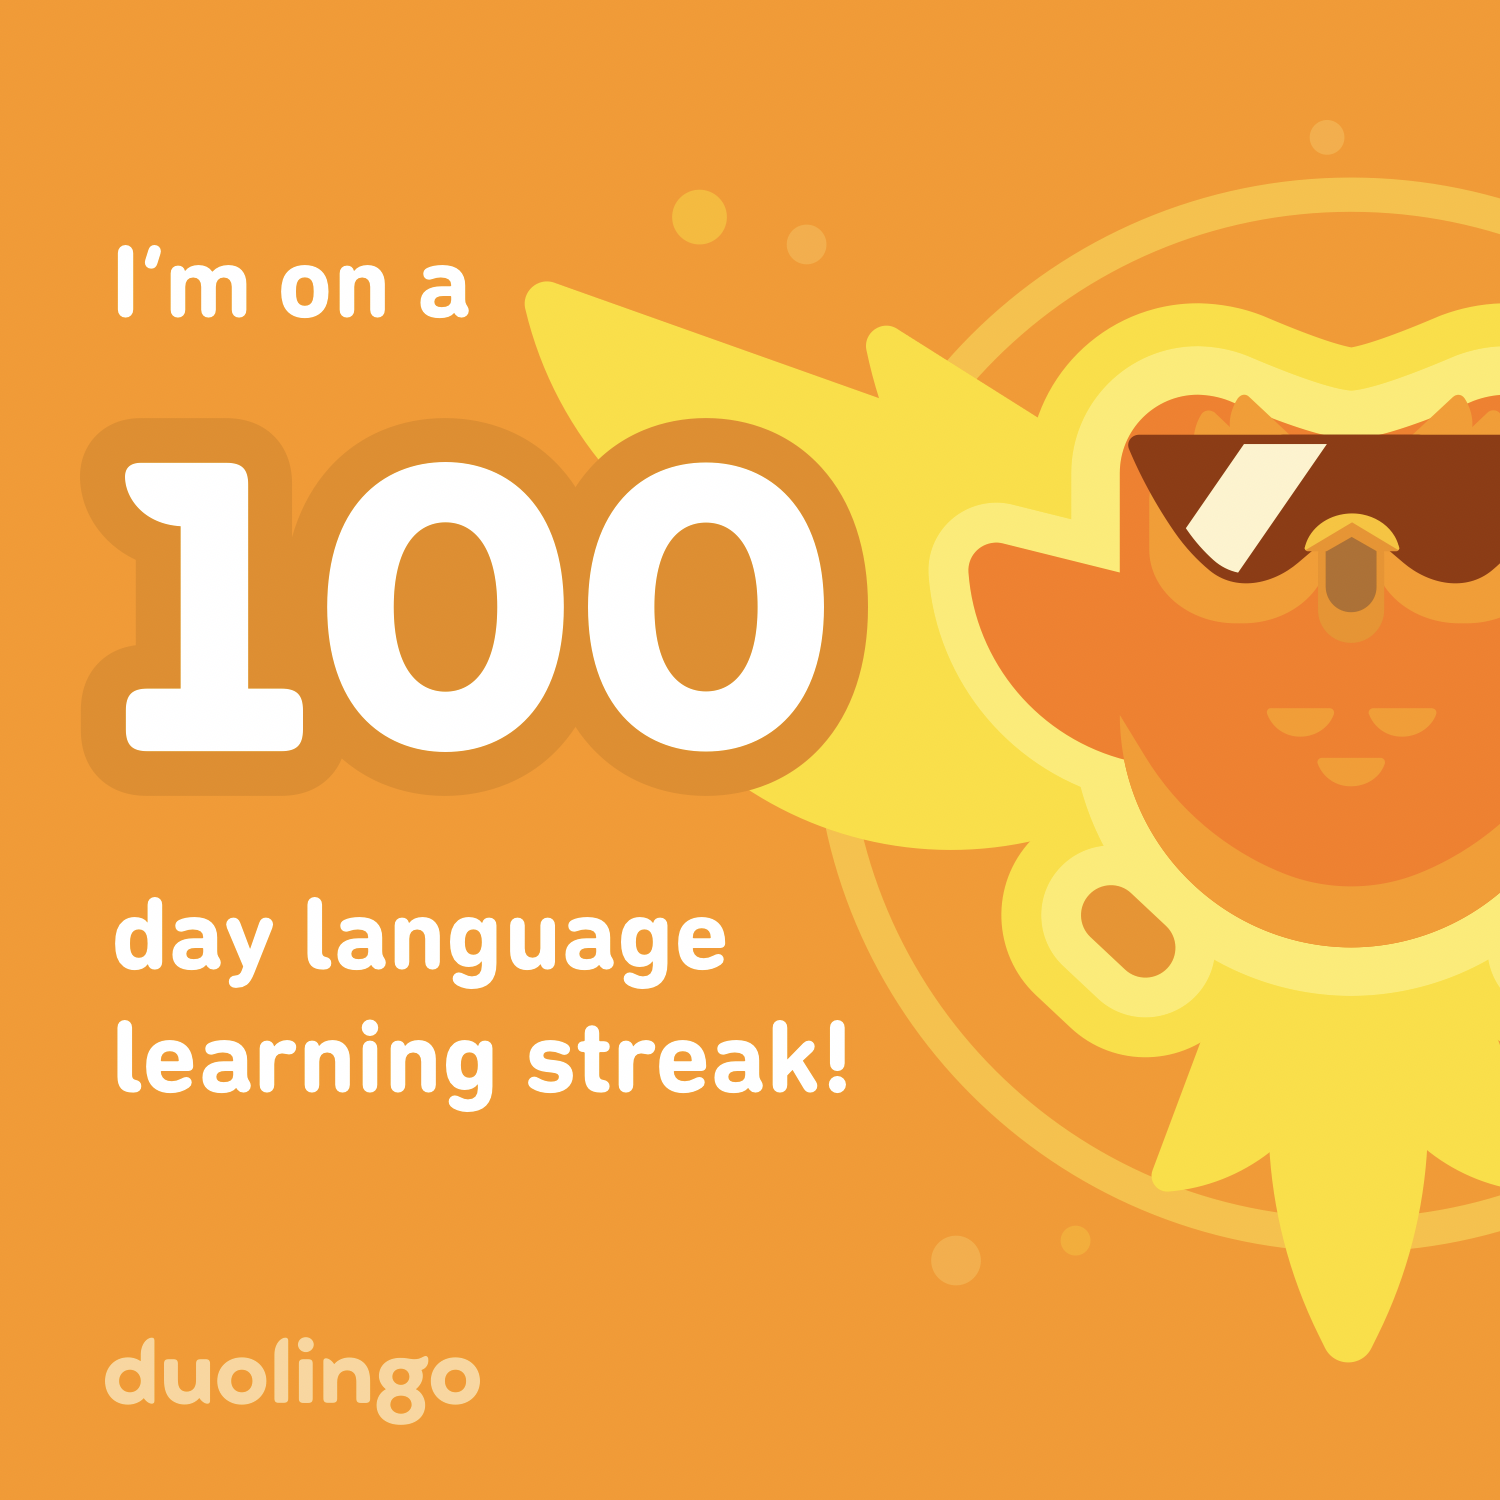 100 day learning streak